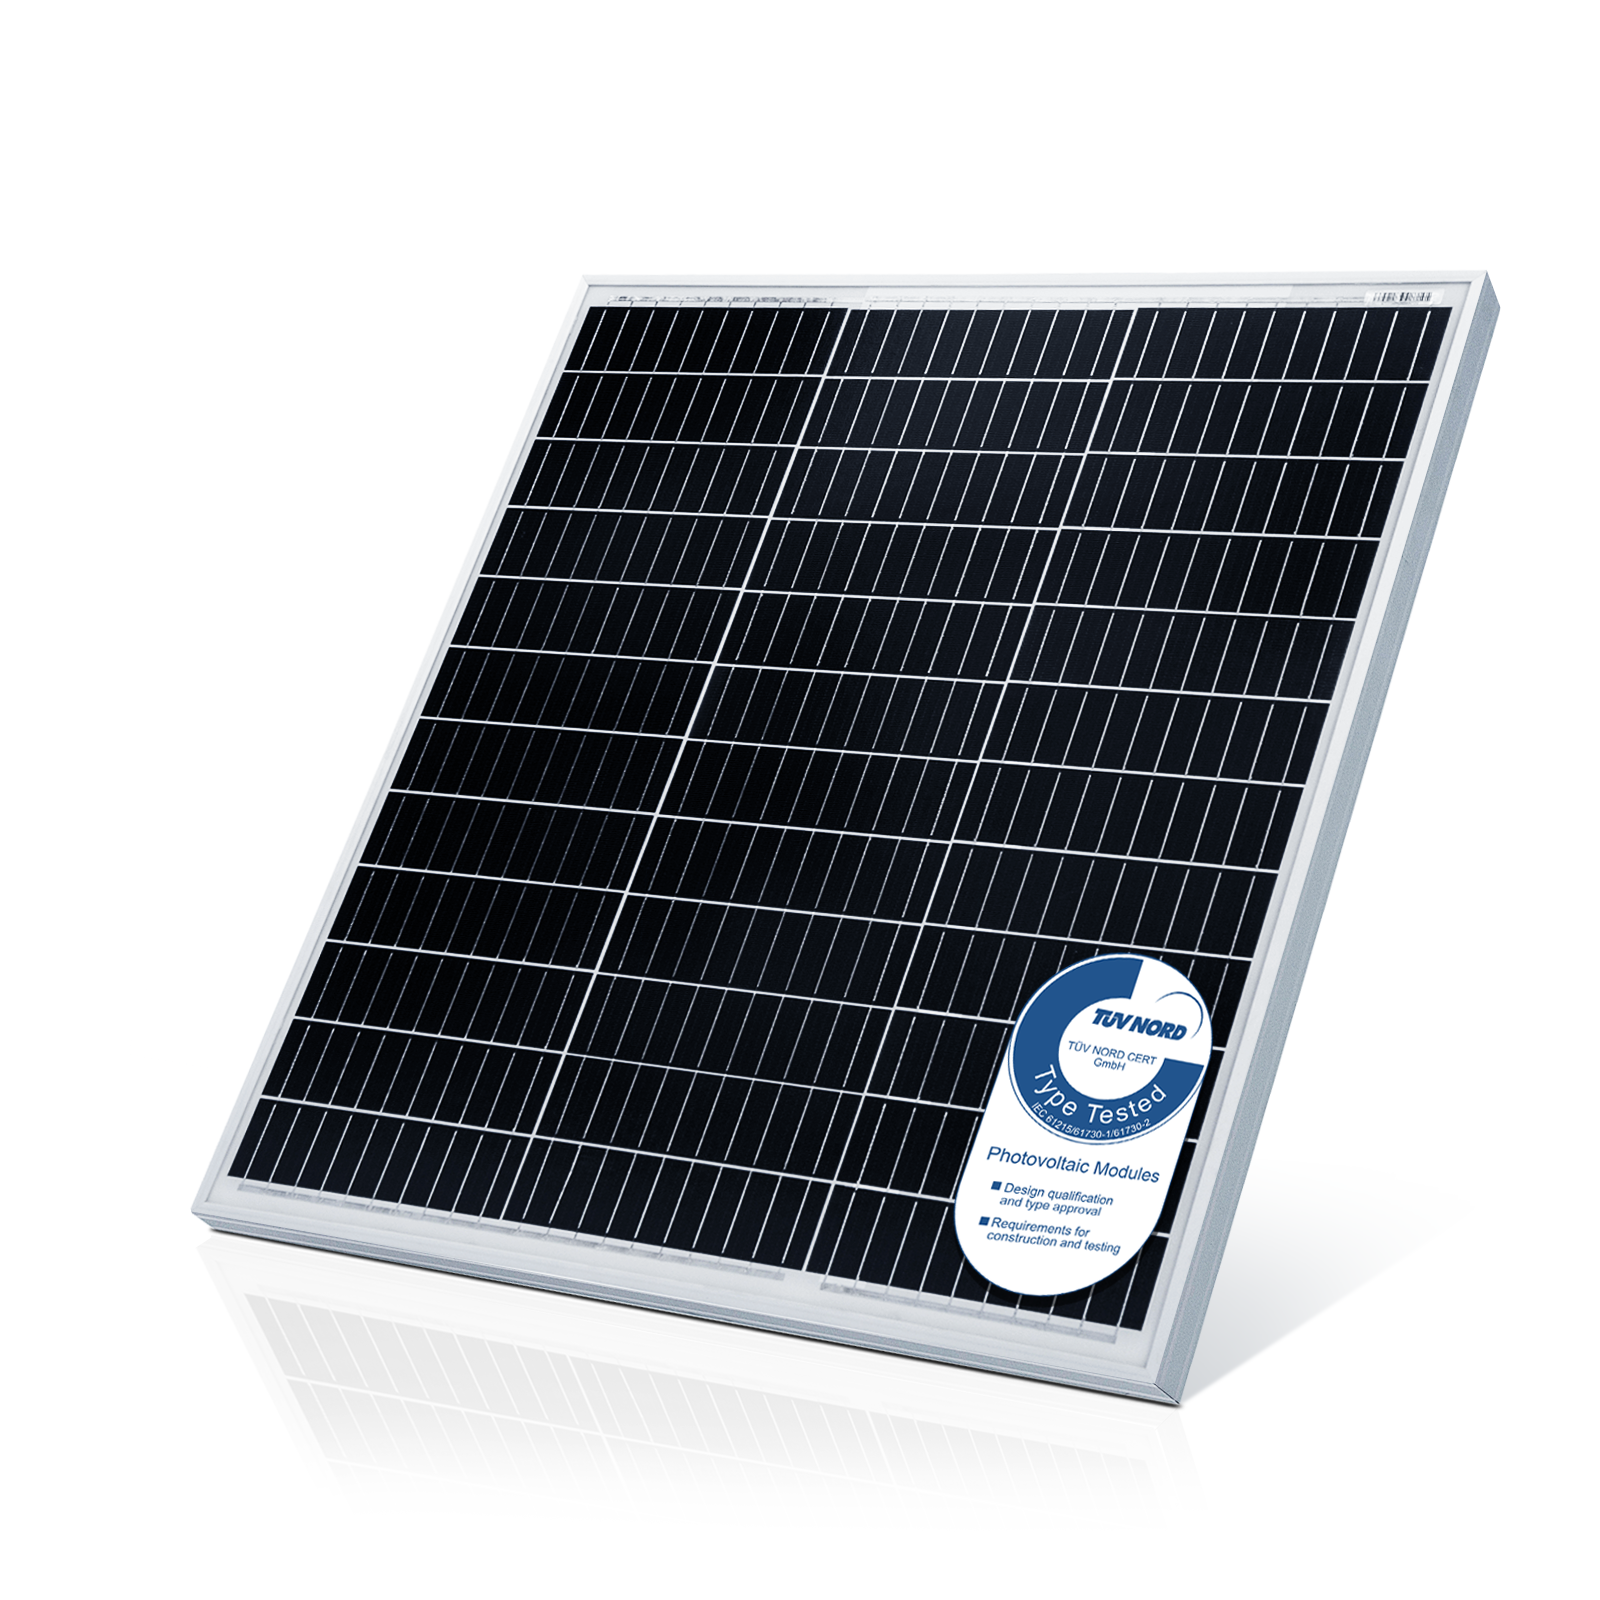 #3 - Solpanel monokrystallinsk - 100 W, 18 V til 12 V batterier, solcelle, ladekabel, silicium